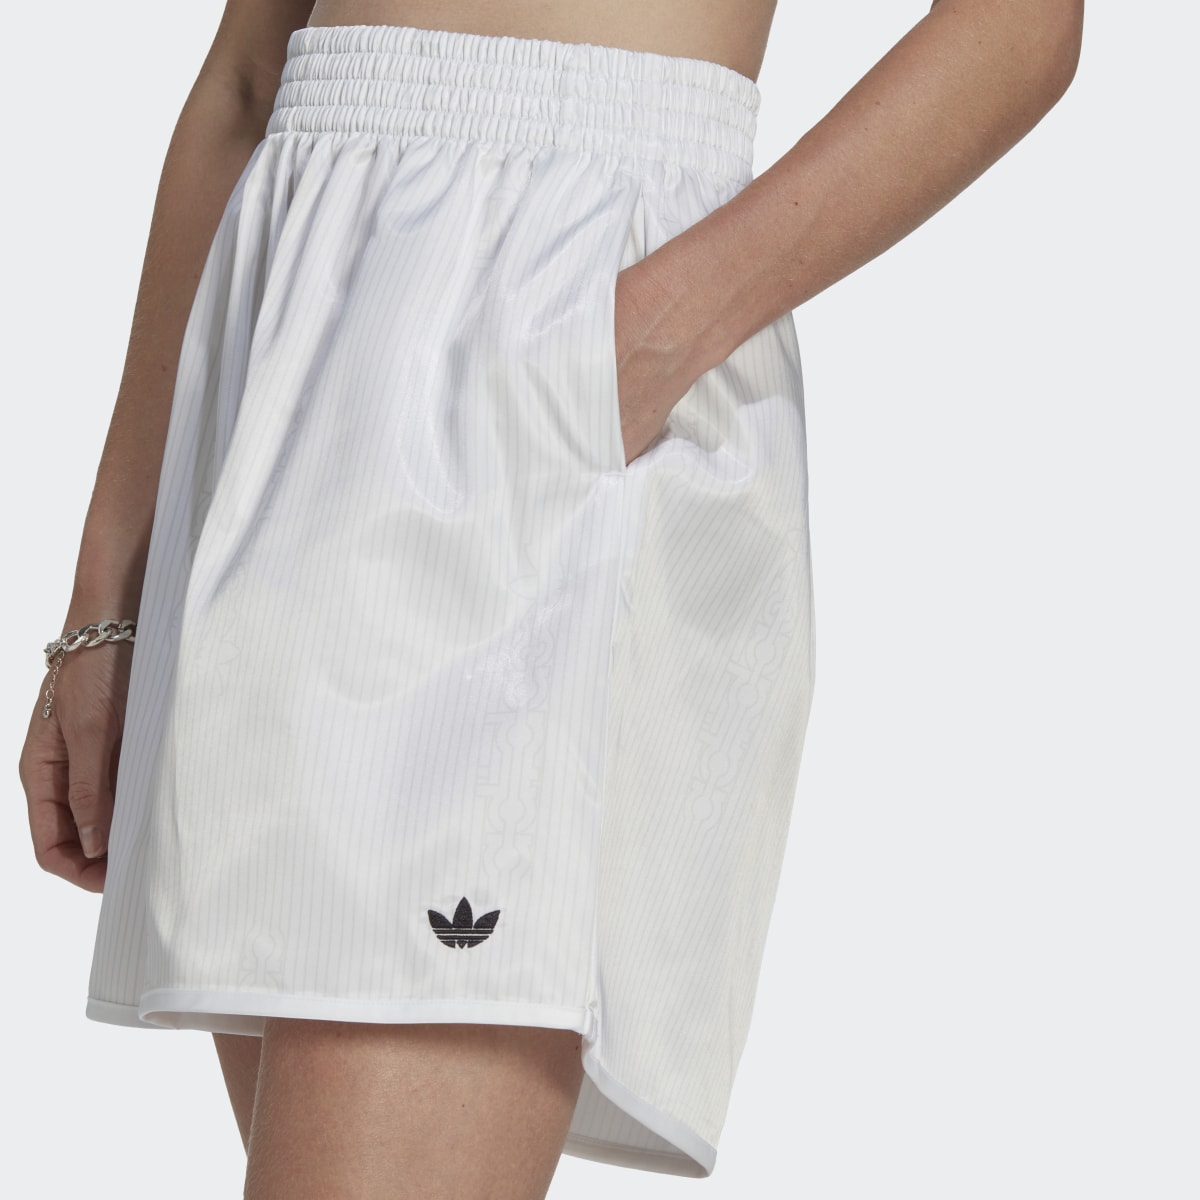 Adidas Loose Allover Print Satin Shorts. 5